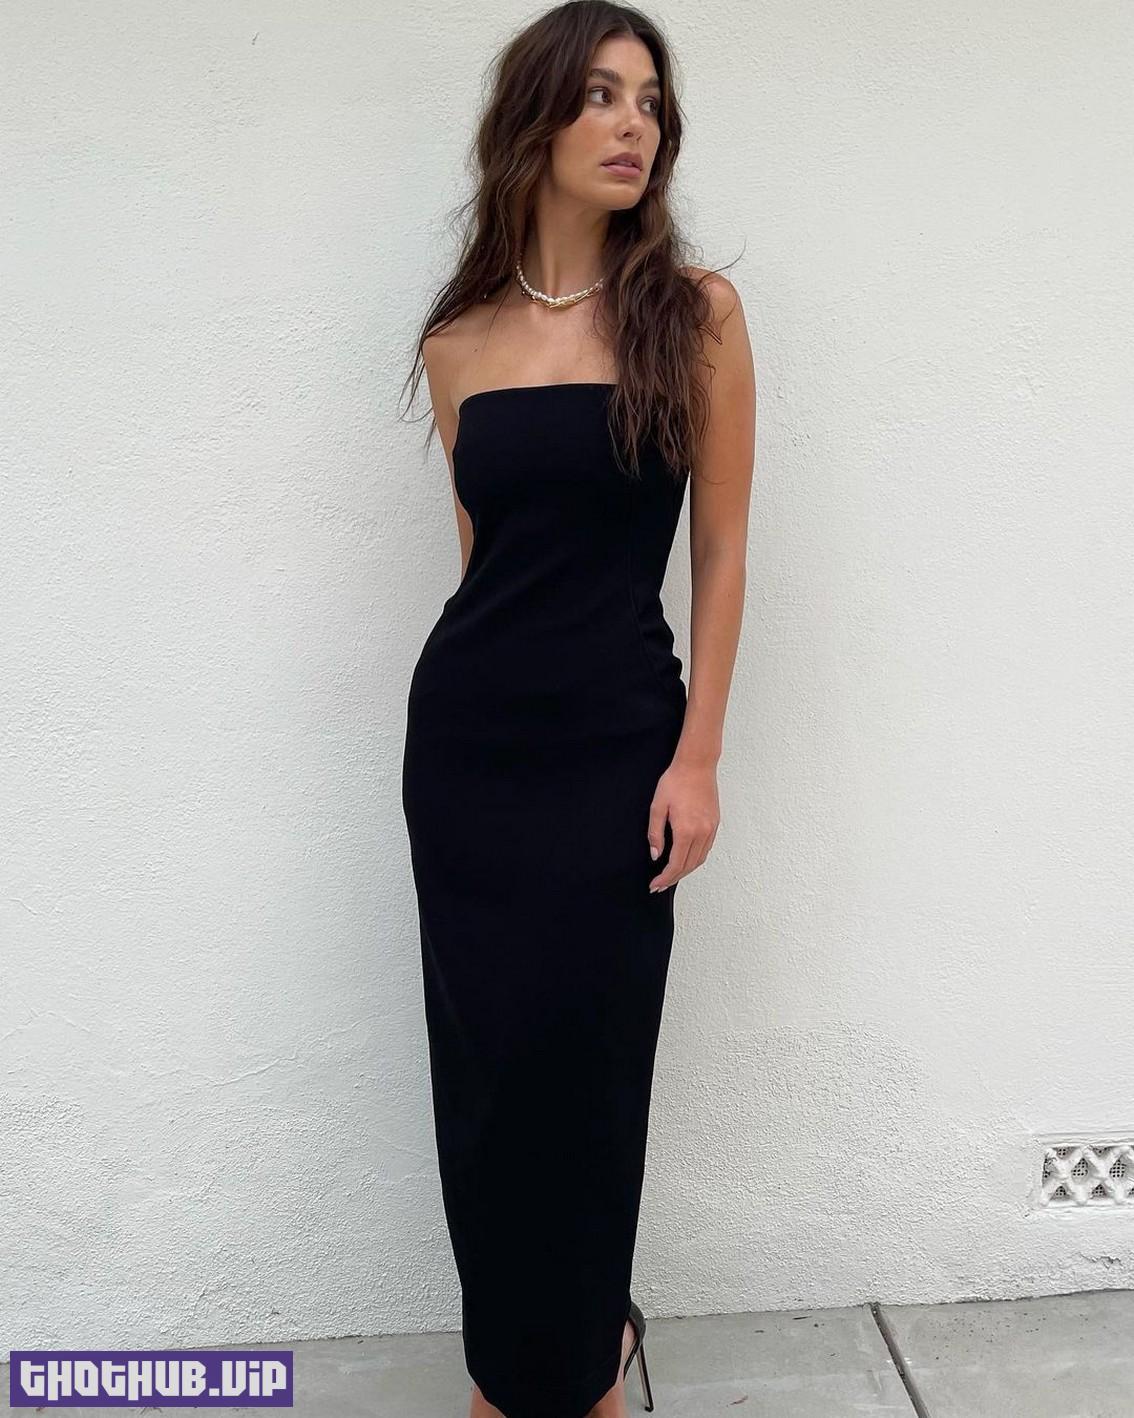 Camila Morrone Sexy In Tight Black Dress